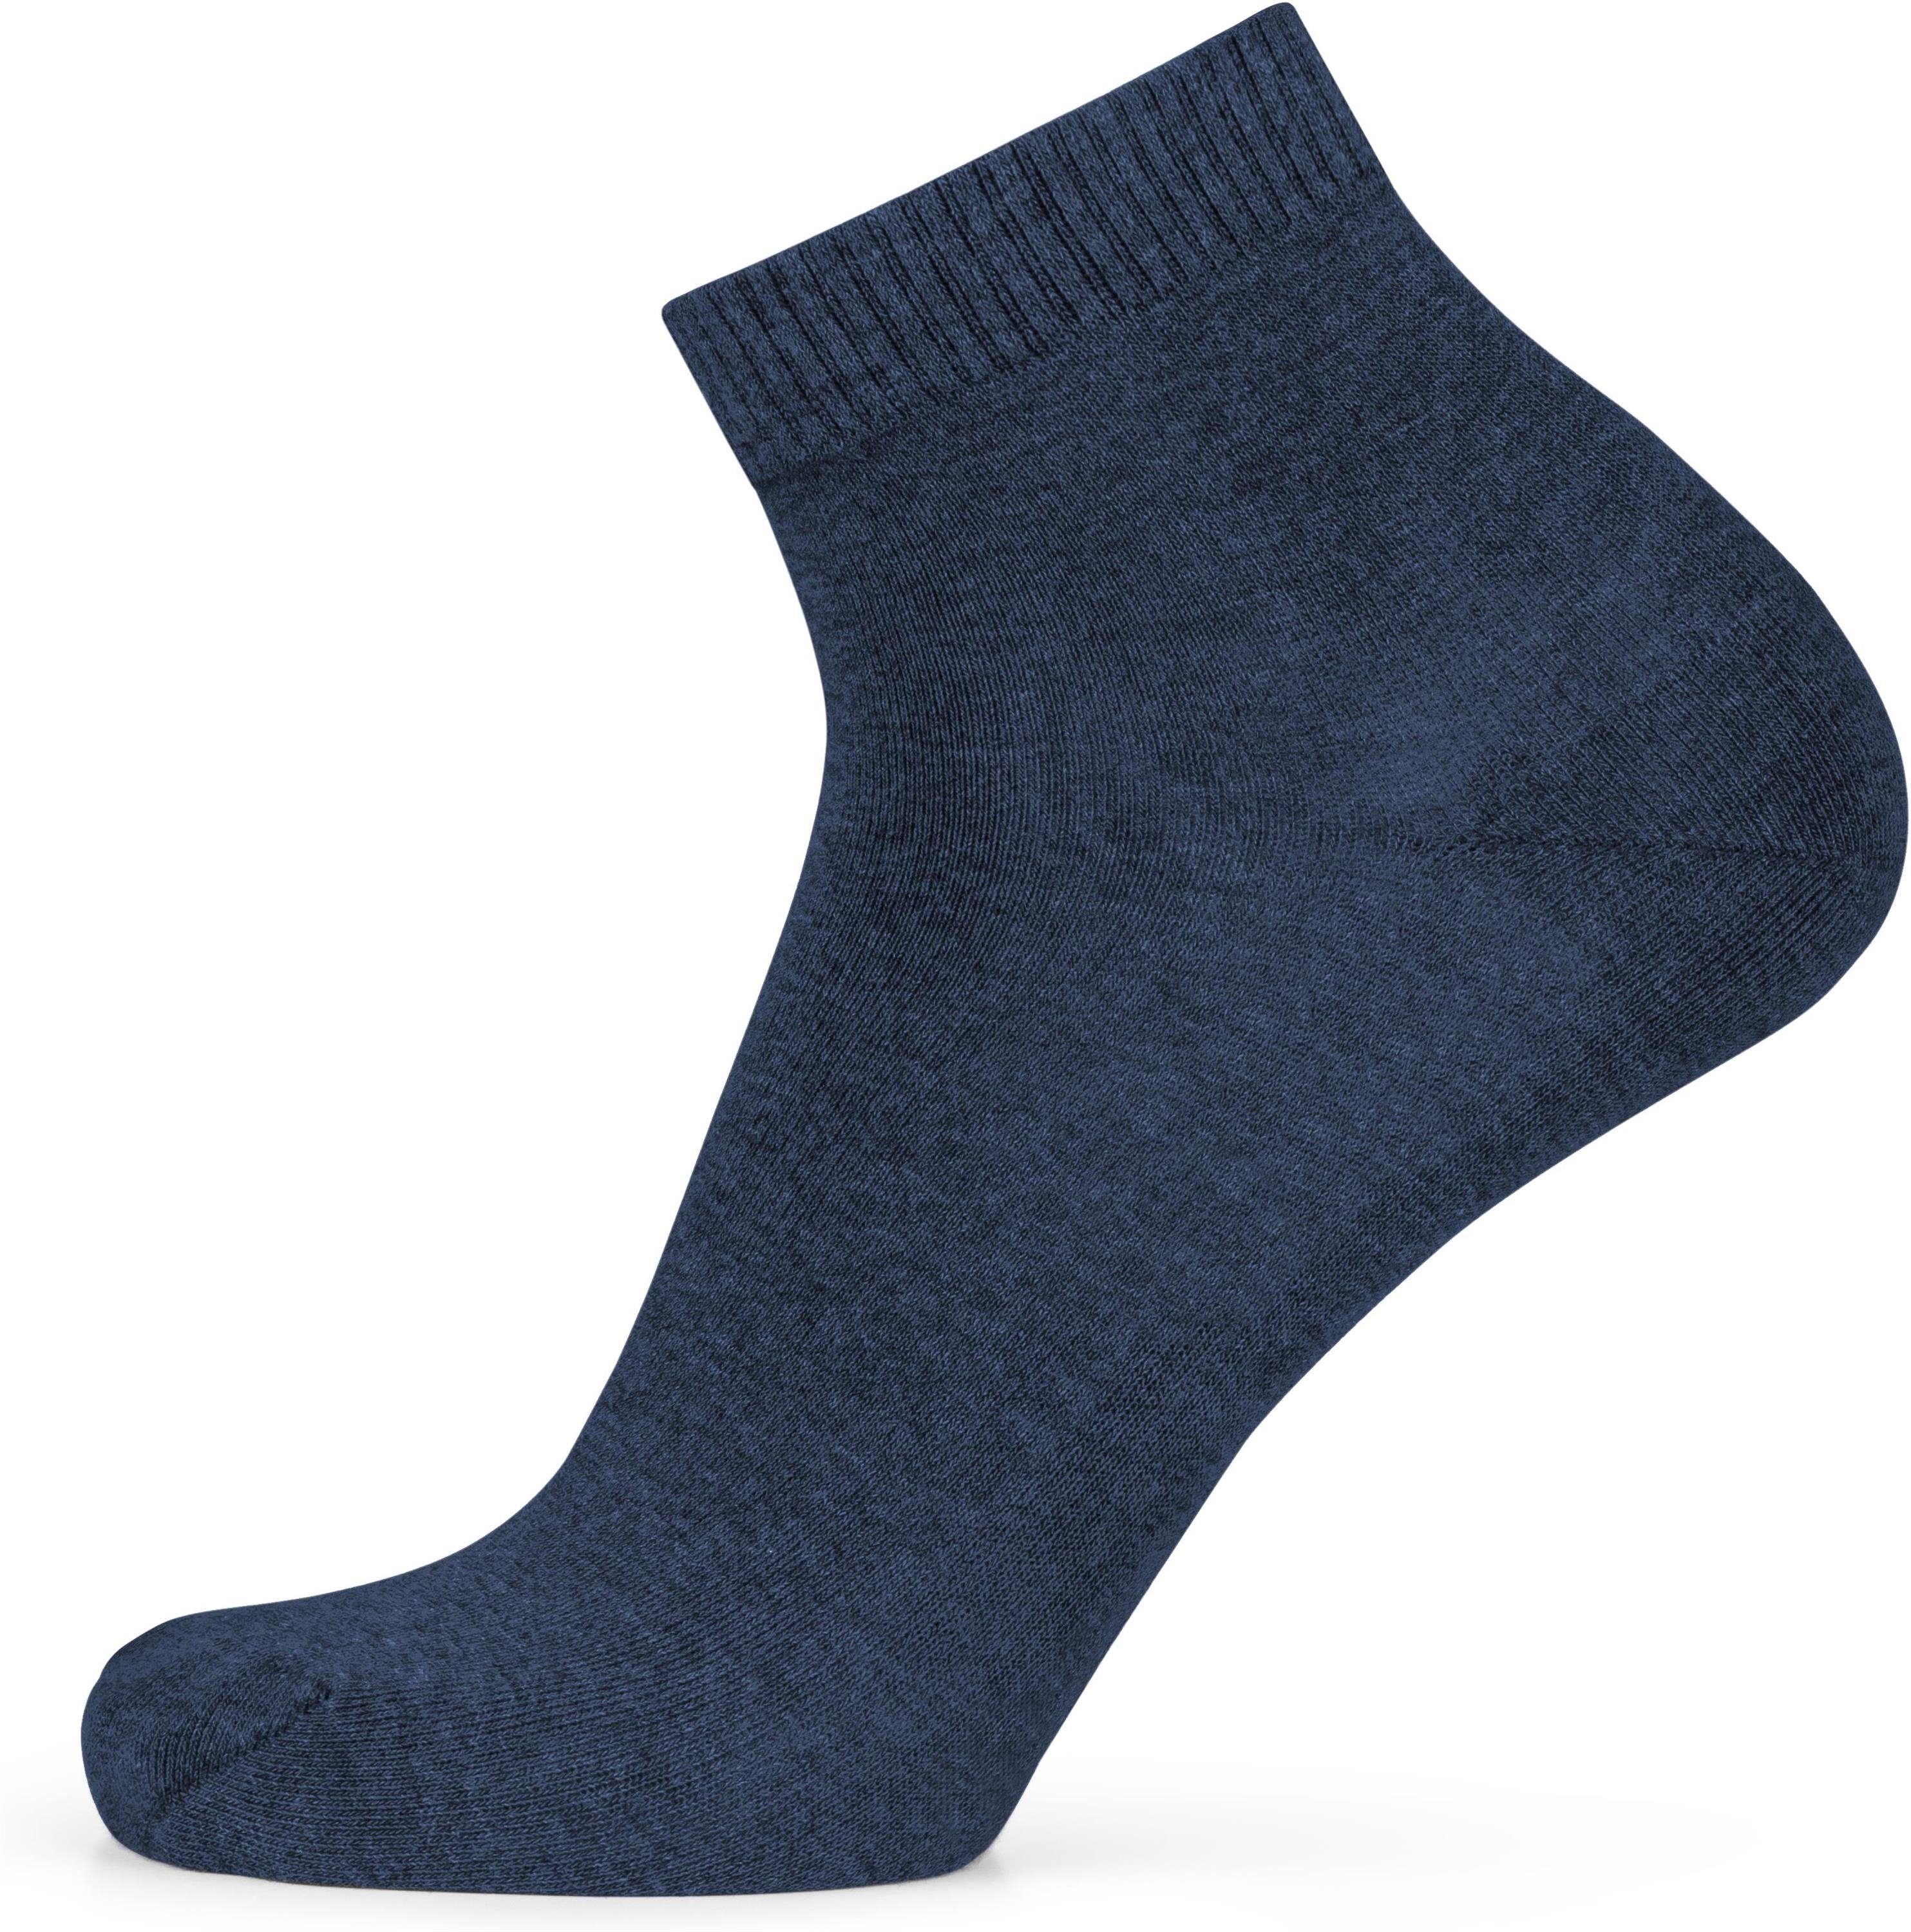 normani Sneakersocken (6 Paar) Kurzschaft Blau/Anthrazit/Schwarz Baumwolle. Gesundheitssocken aus